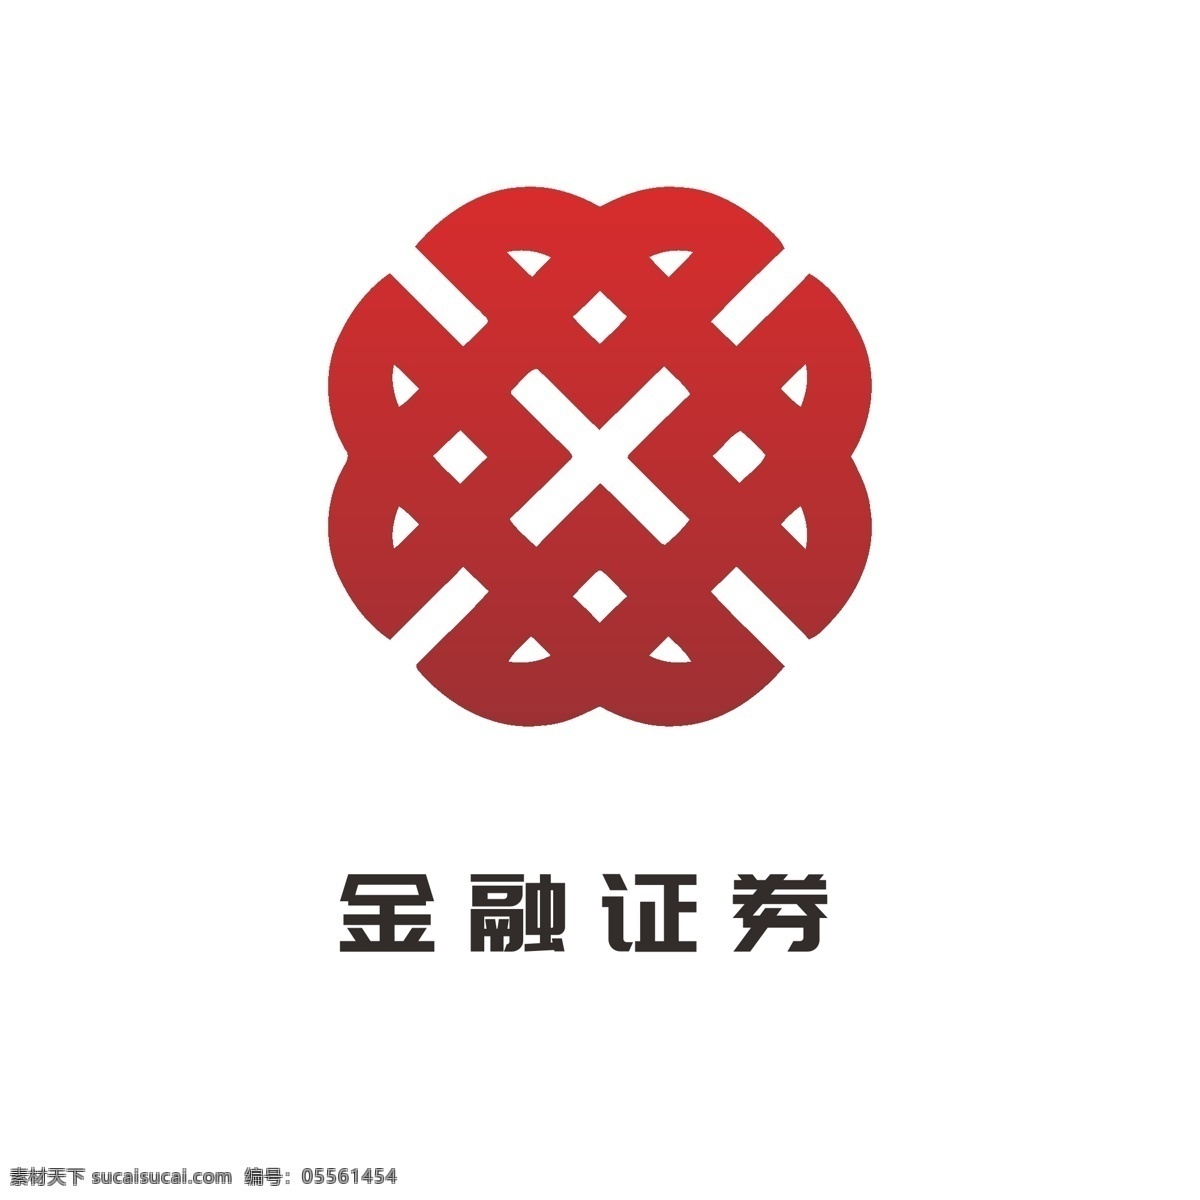 金融 理财 保险 证券投资 logo 大众 通用 lo 证券logo 保险logo 大众logo 通用logo